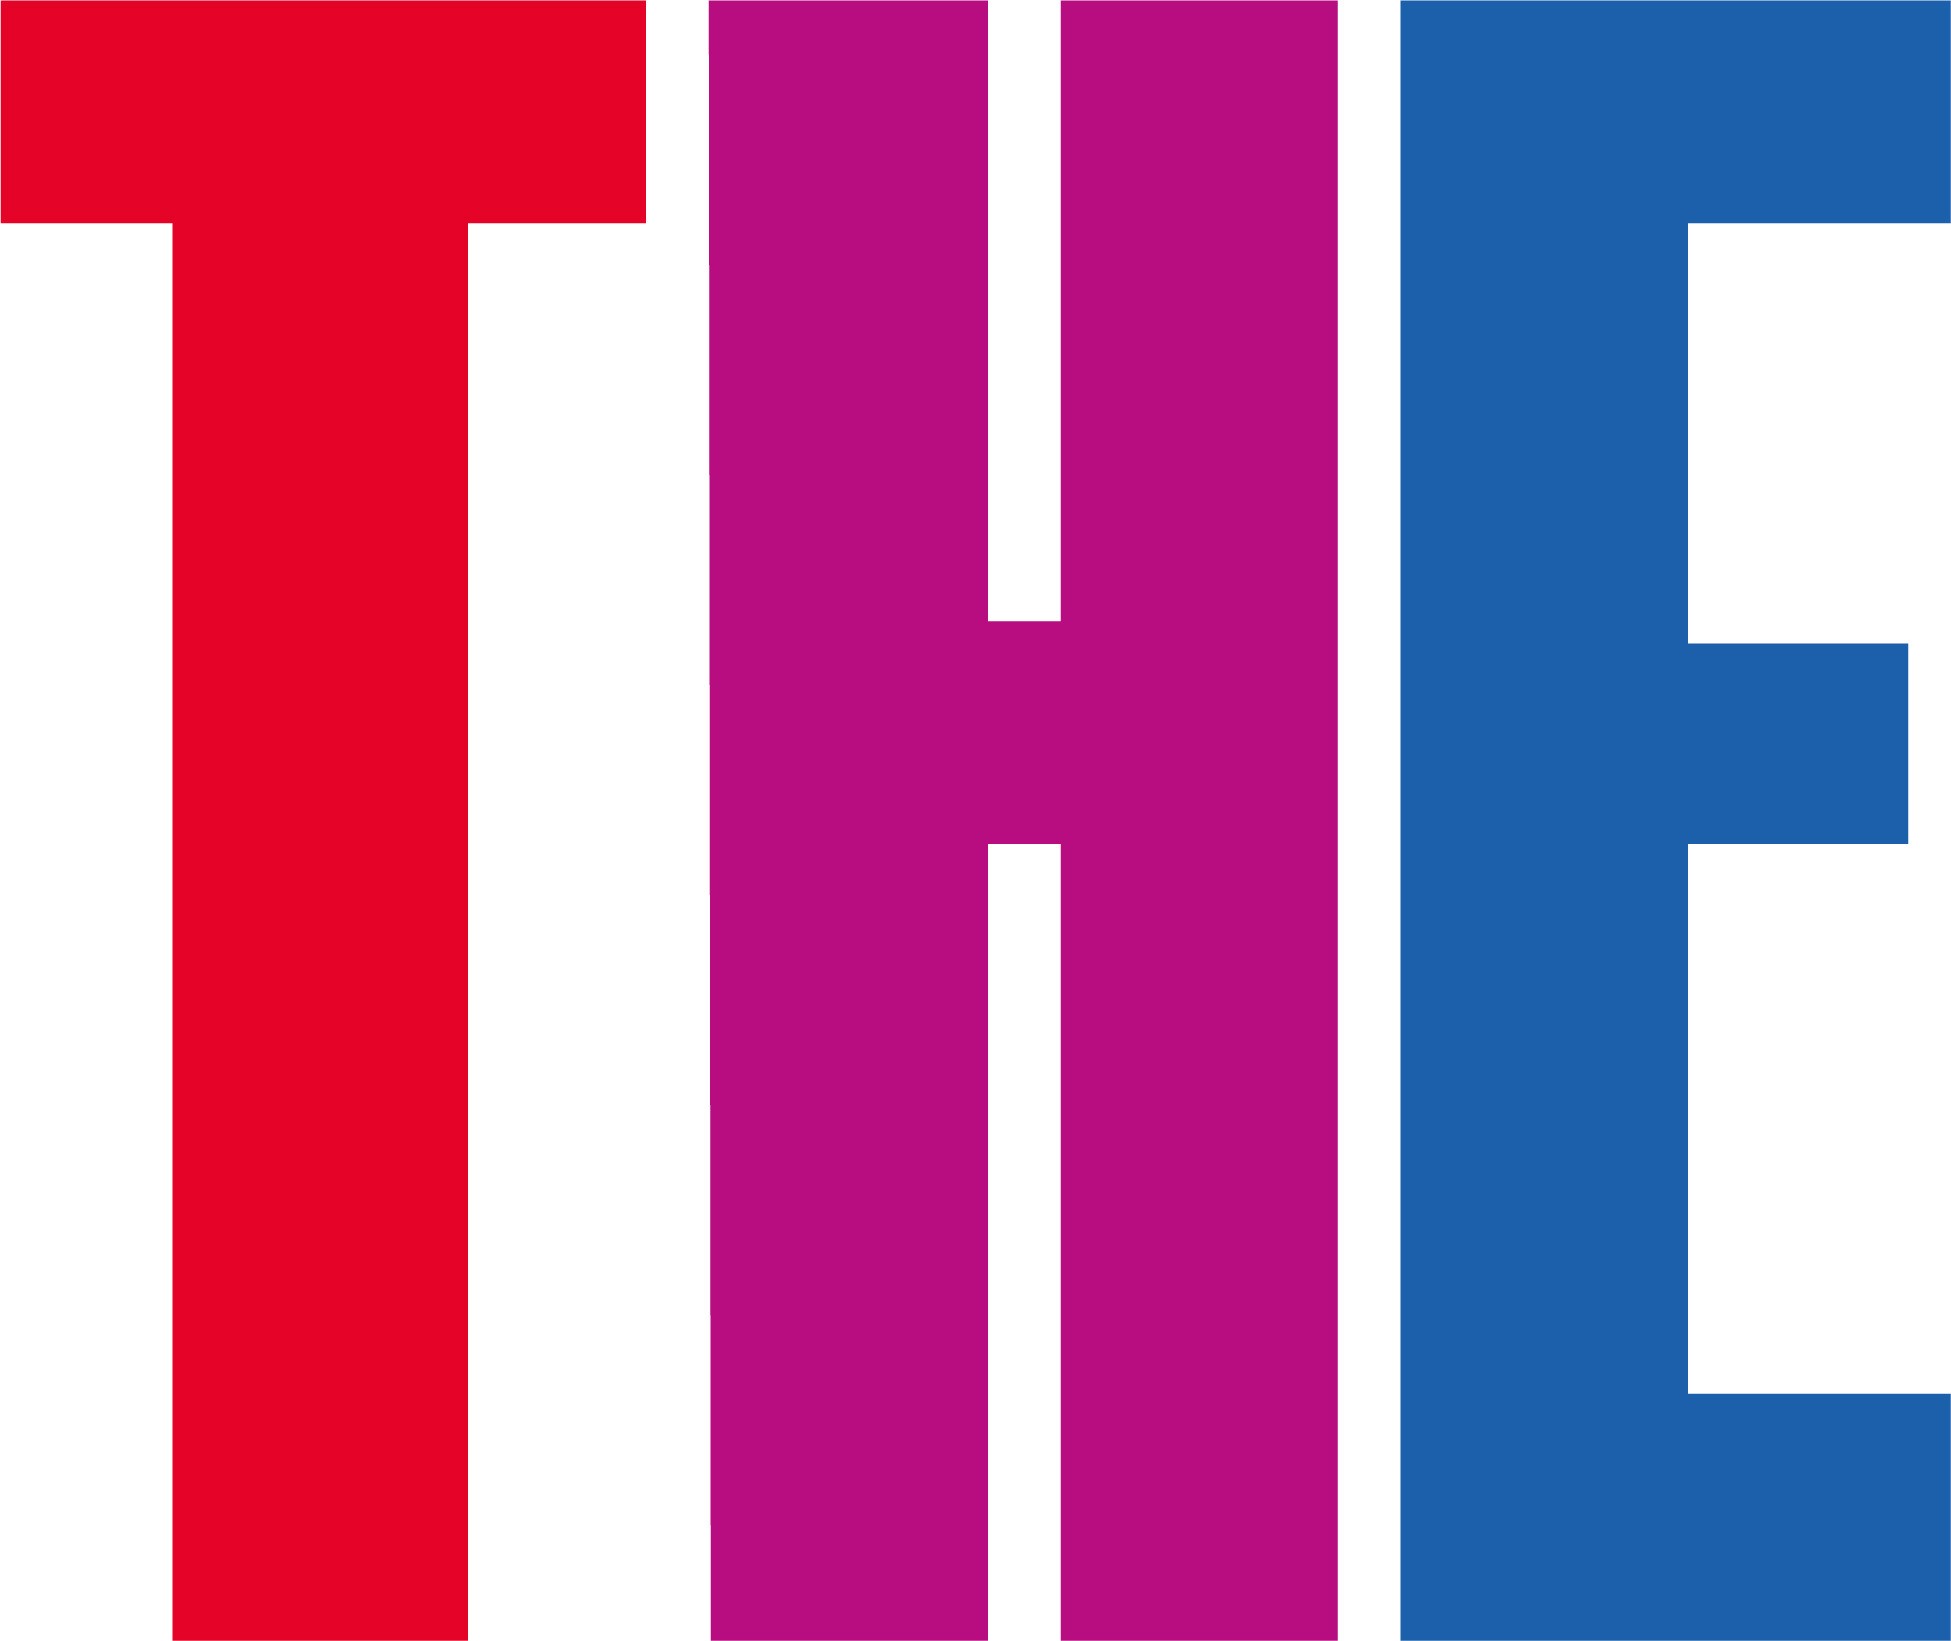 O logotipo do Times Higher Education, um T vermelho, um H roxo e um E azul.